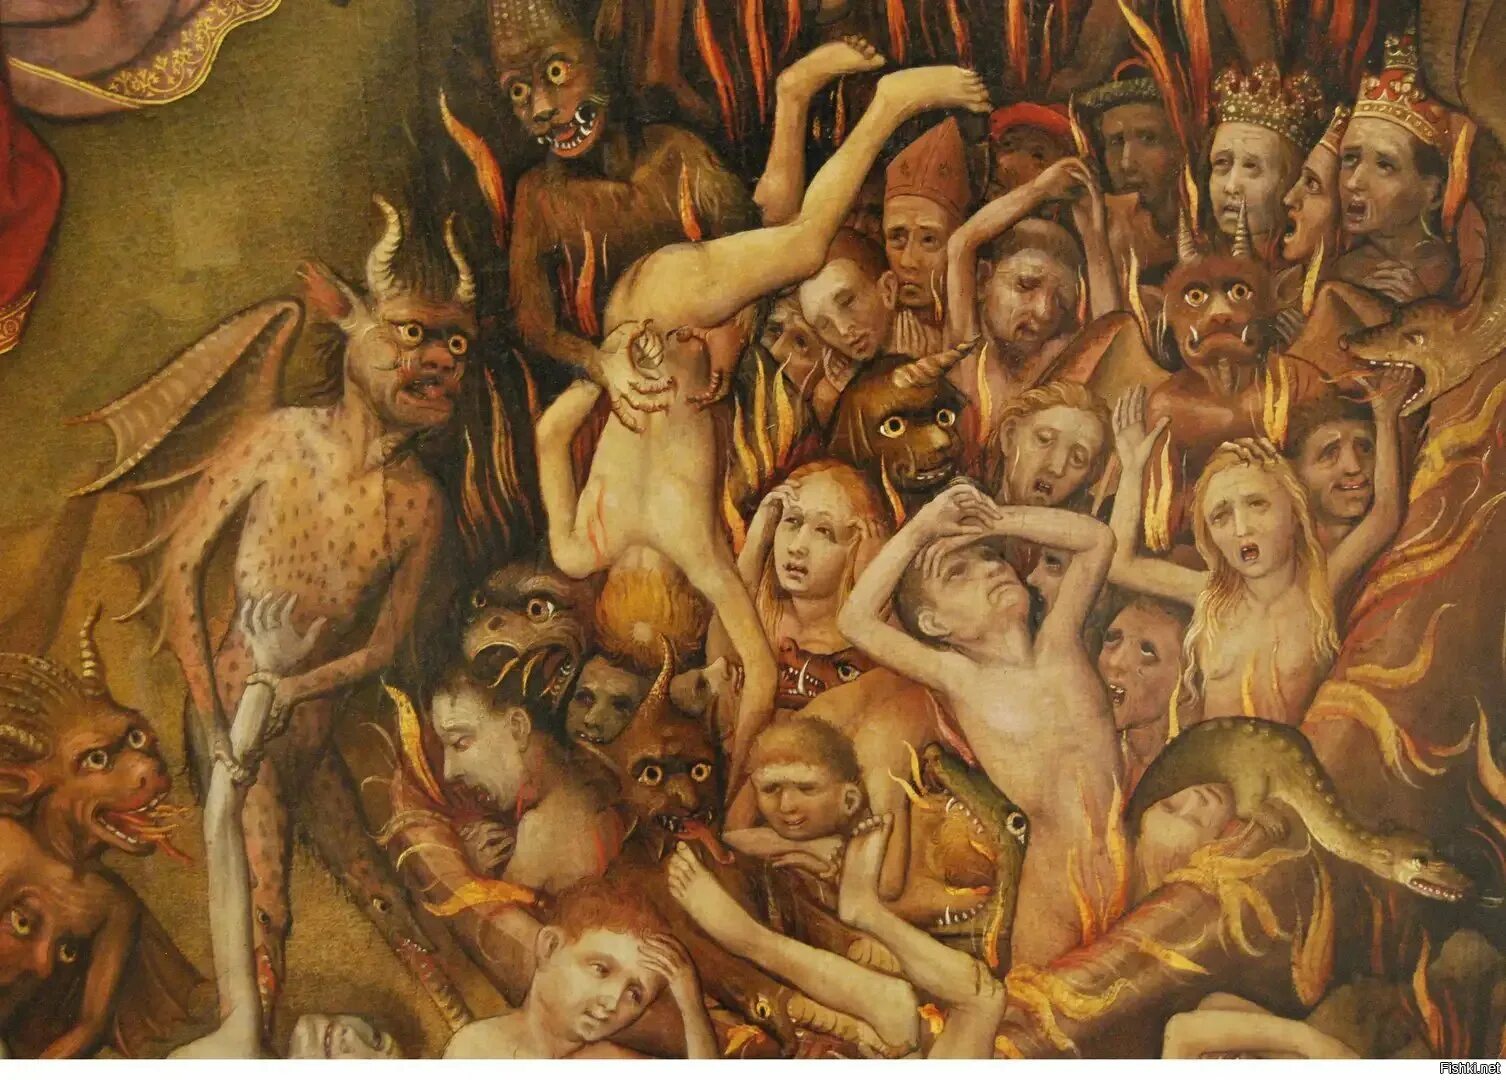 Пороки души человека. Питер брейгель страшный суд. Ганс Мемлинг мучение грешников в аду. Картина ад Ганса Мемлинга. Питер брейгель страшный суд - 1558.